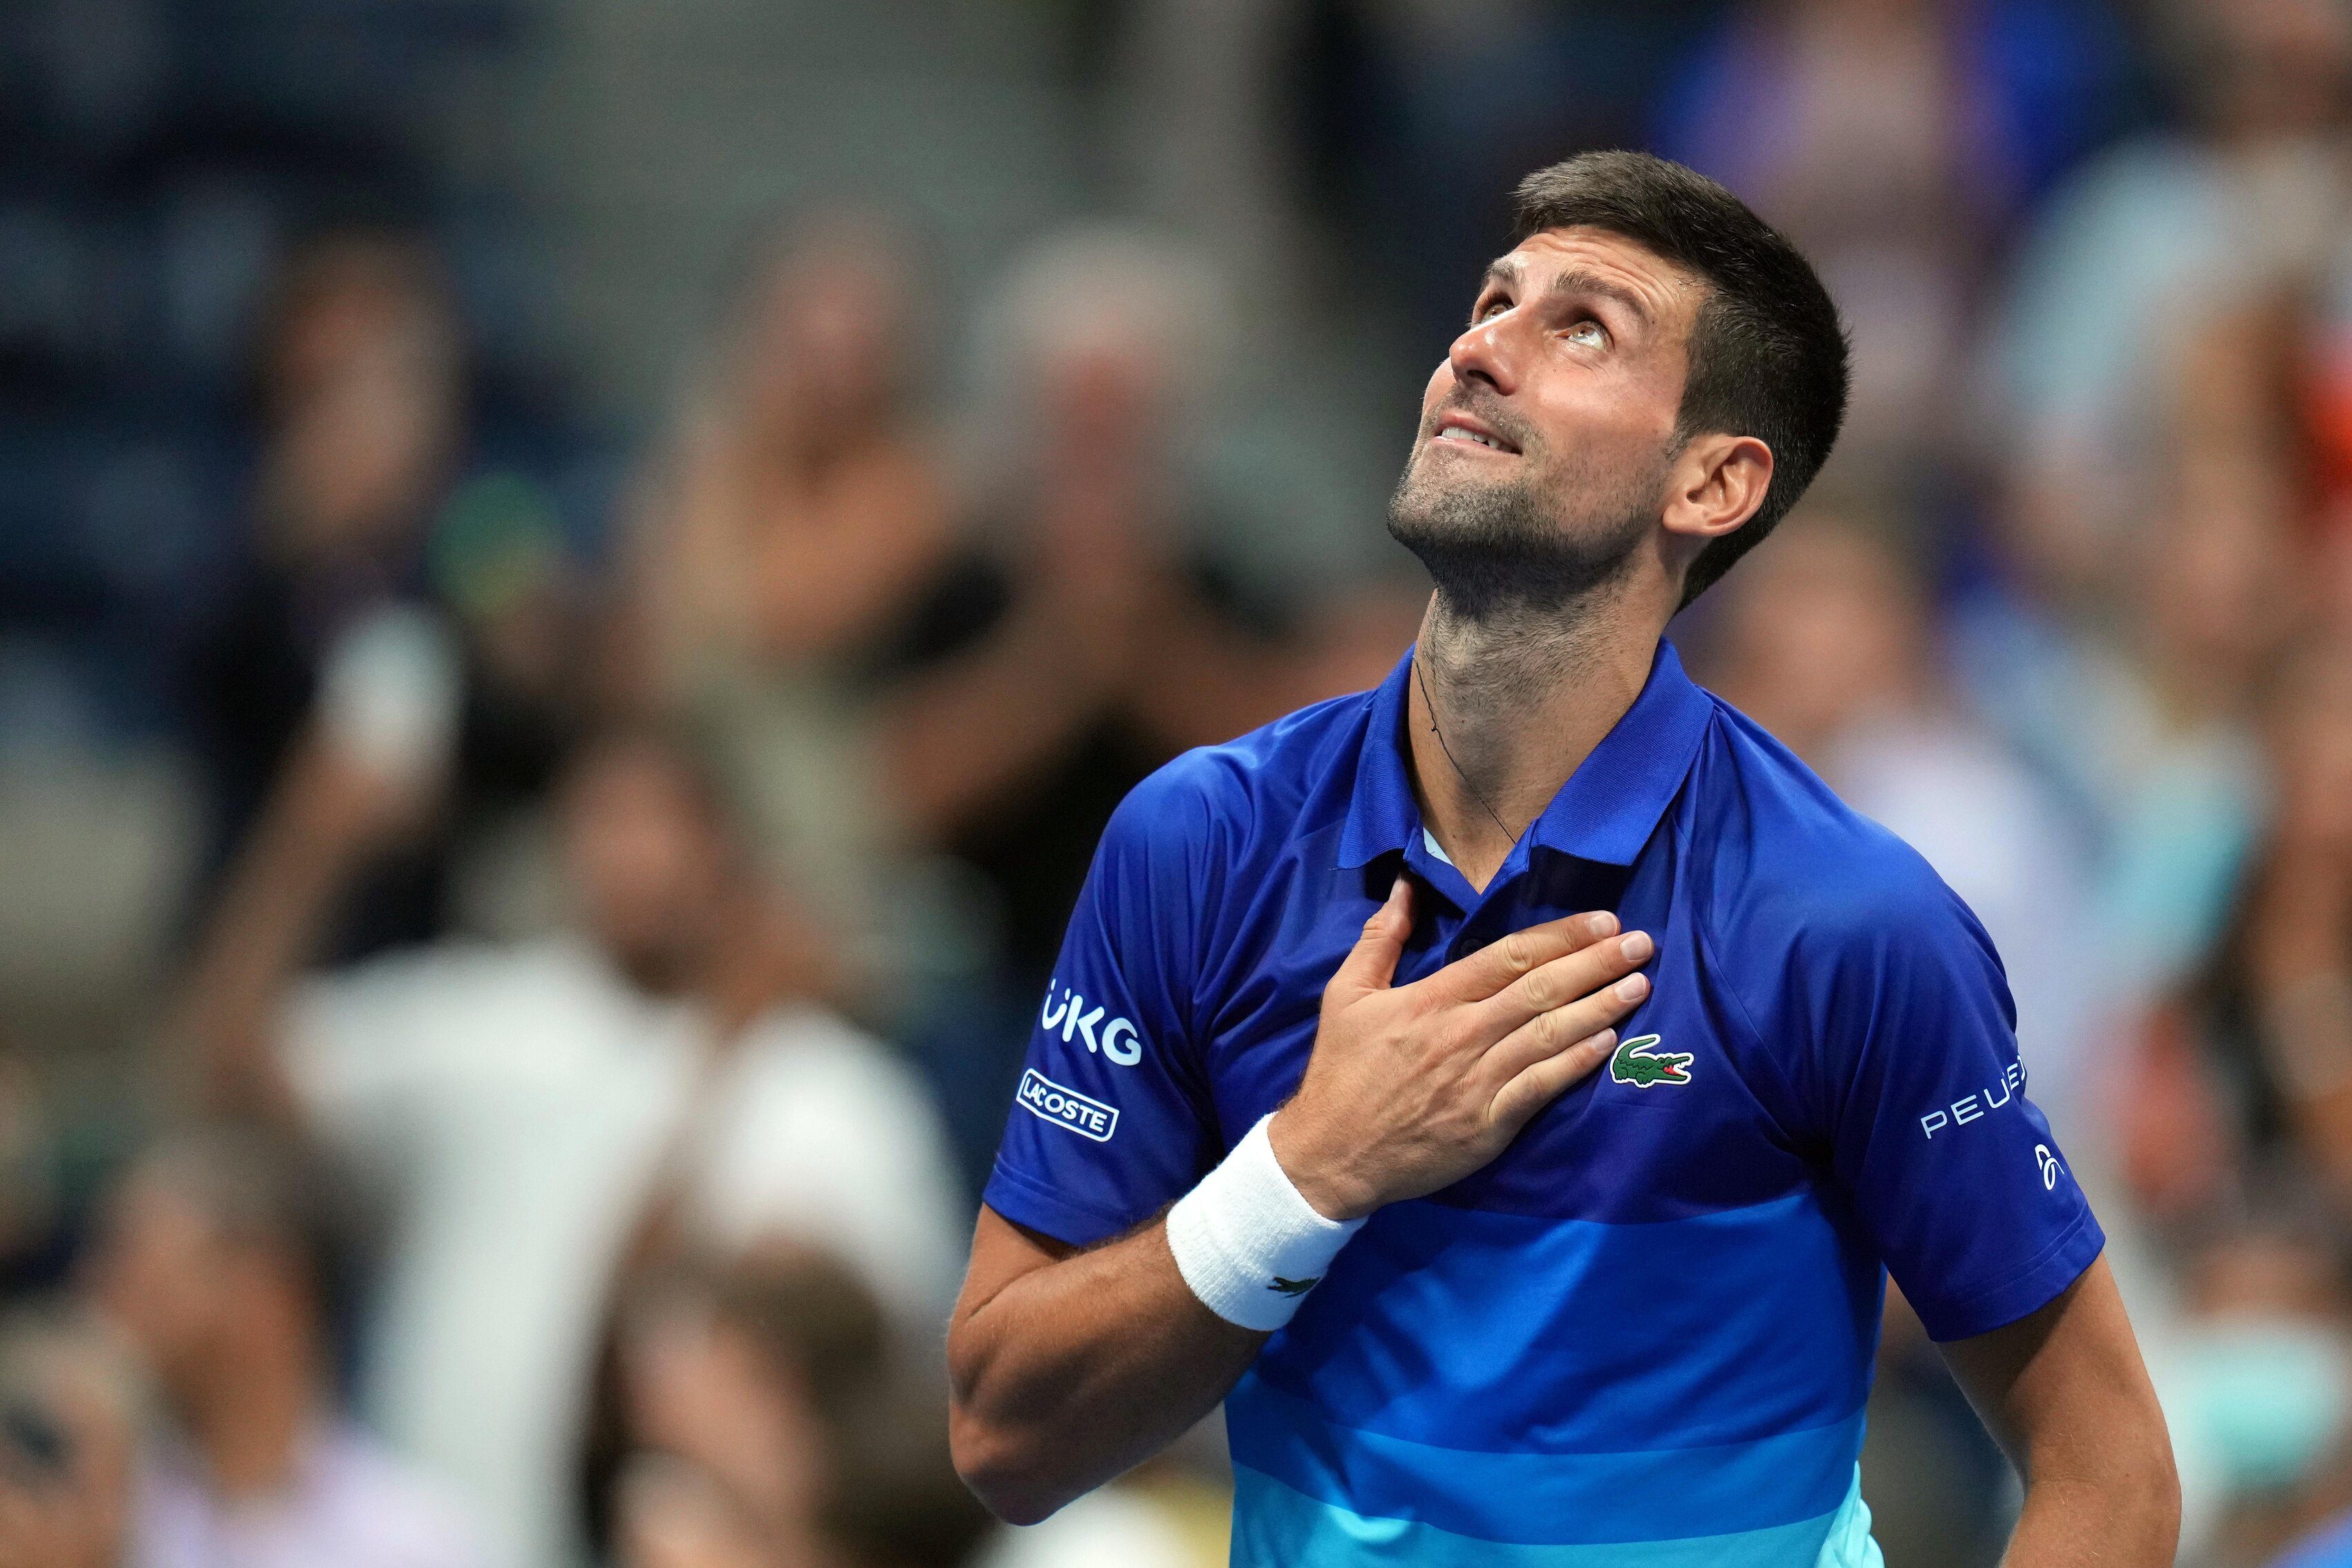 Djokovic a victim of politics, kept in captivity in Australia, says family